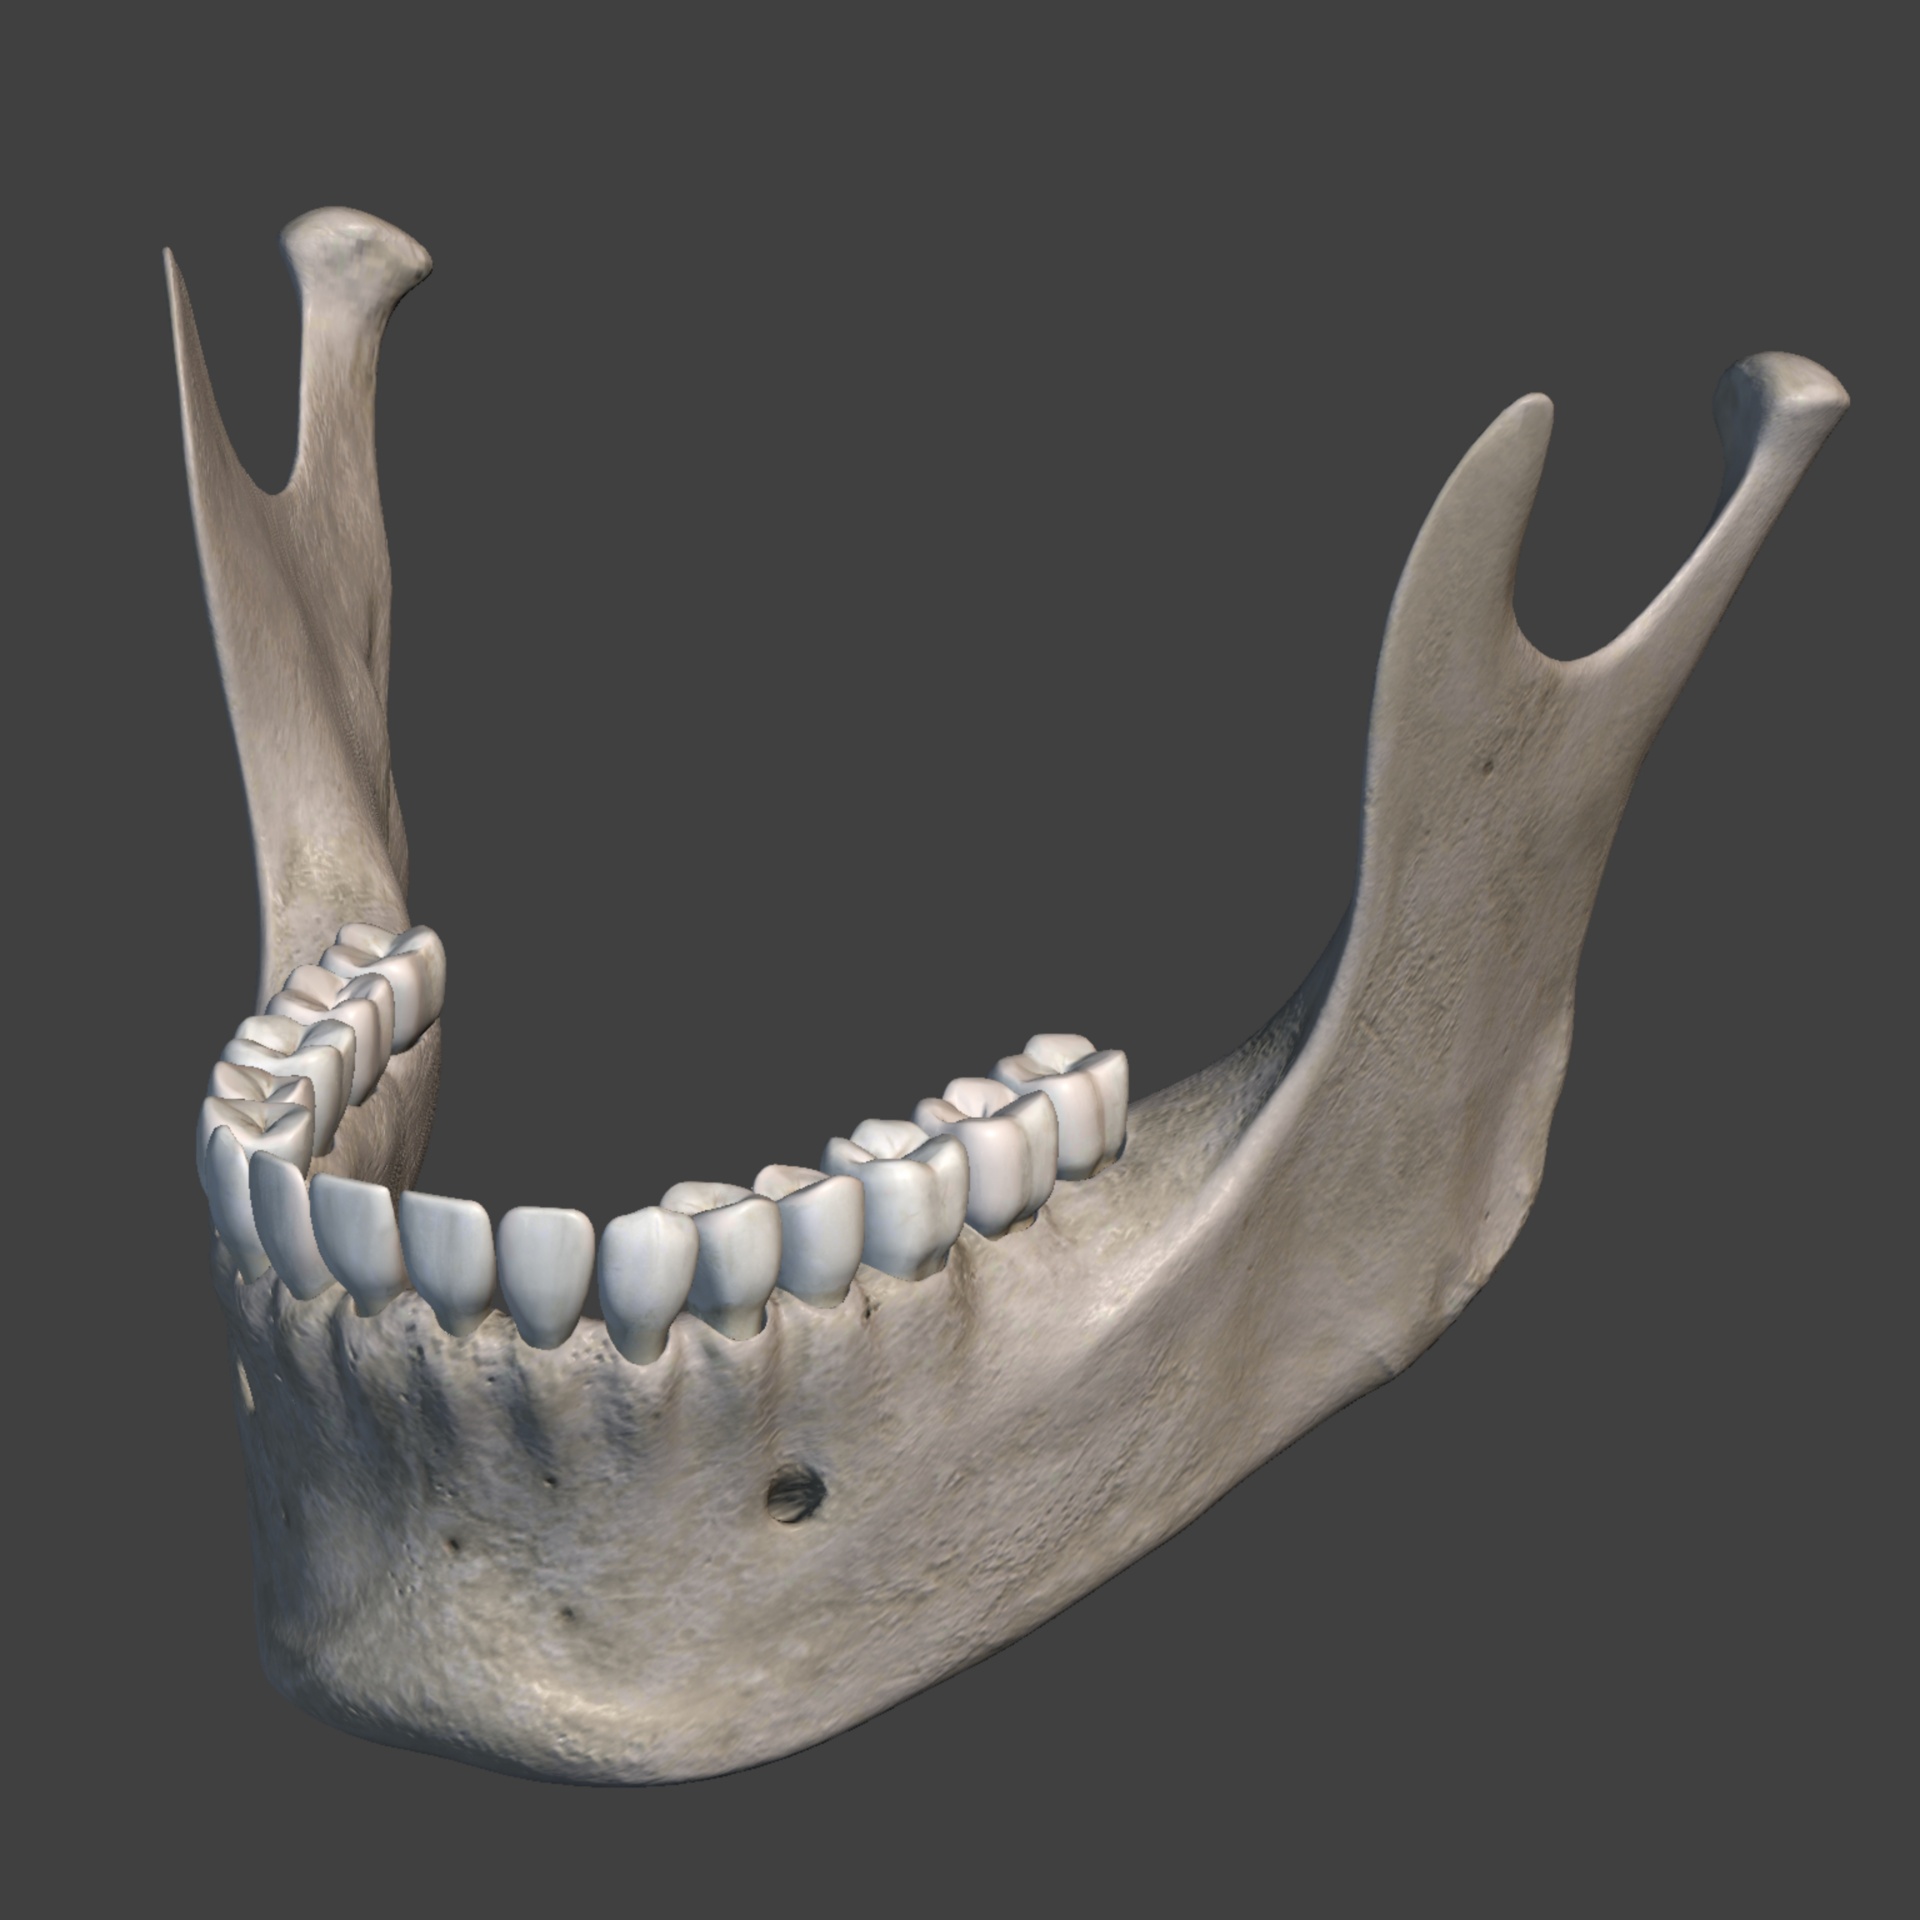 Фото зубов нижней челюсти по номерам